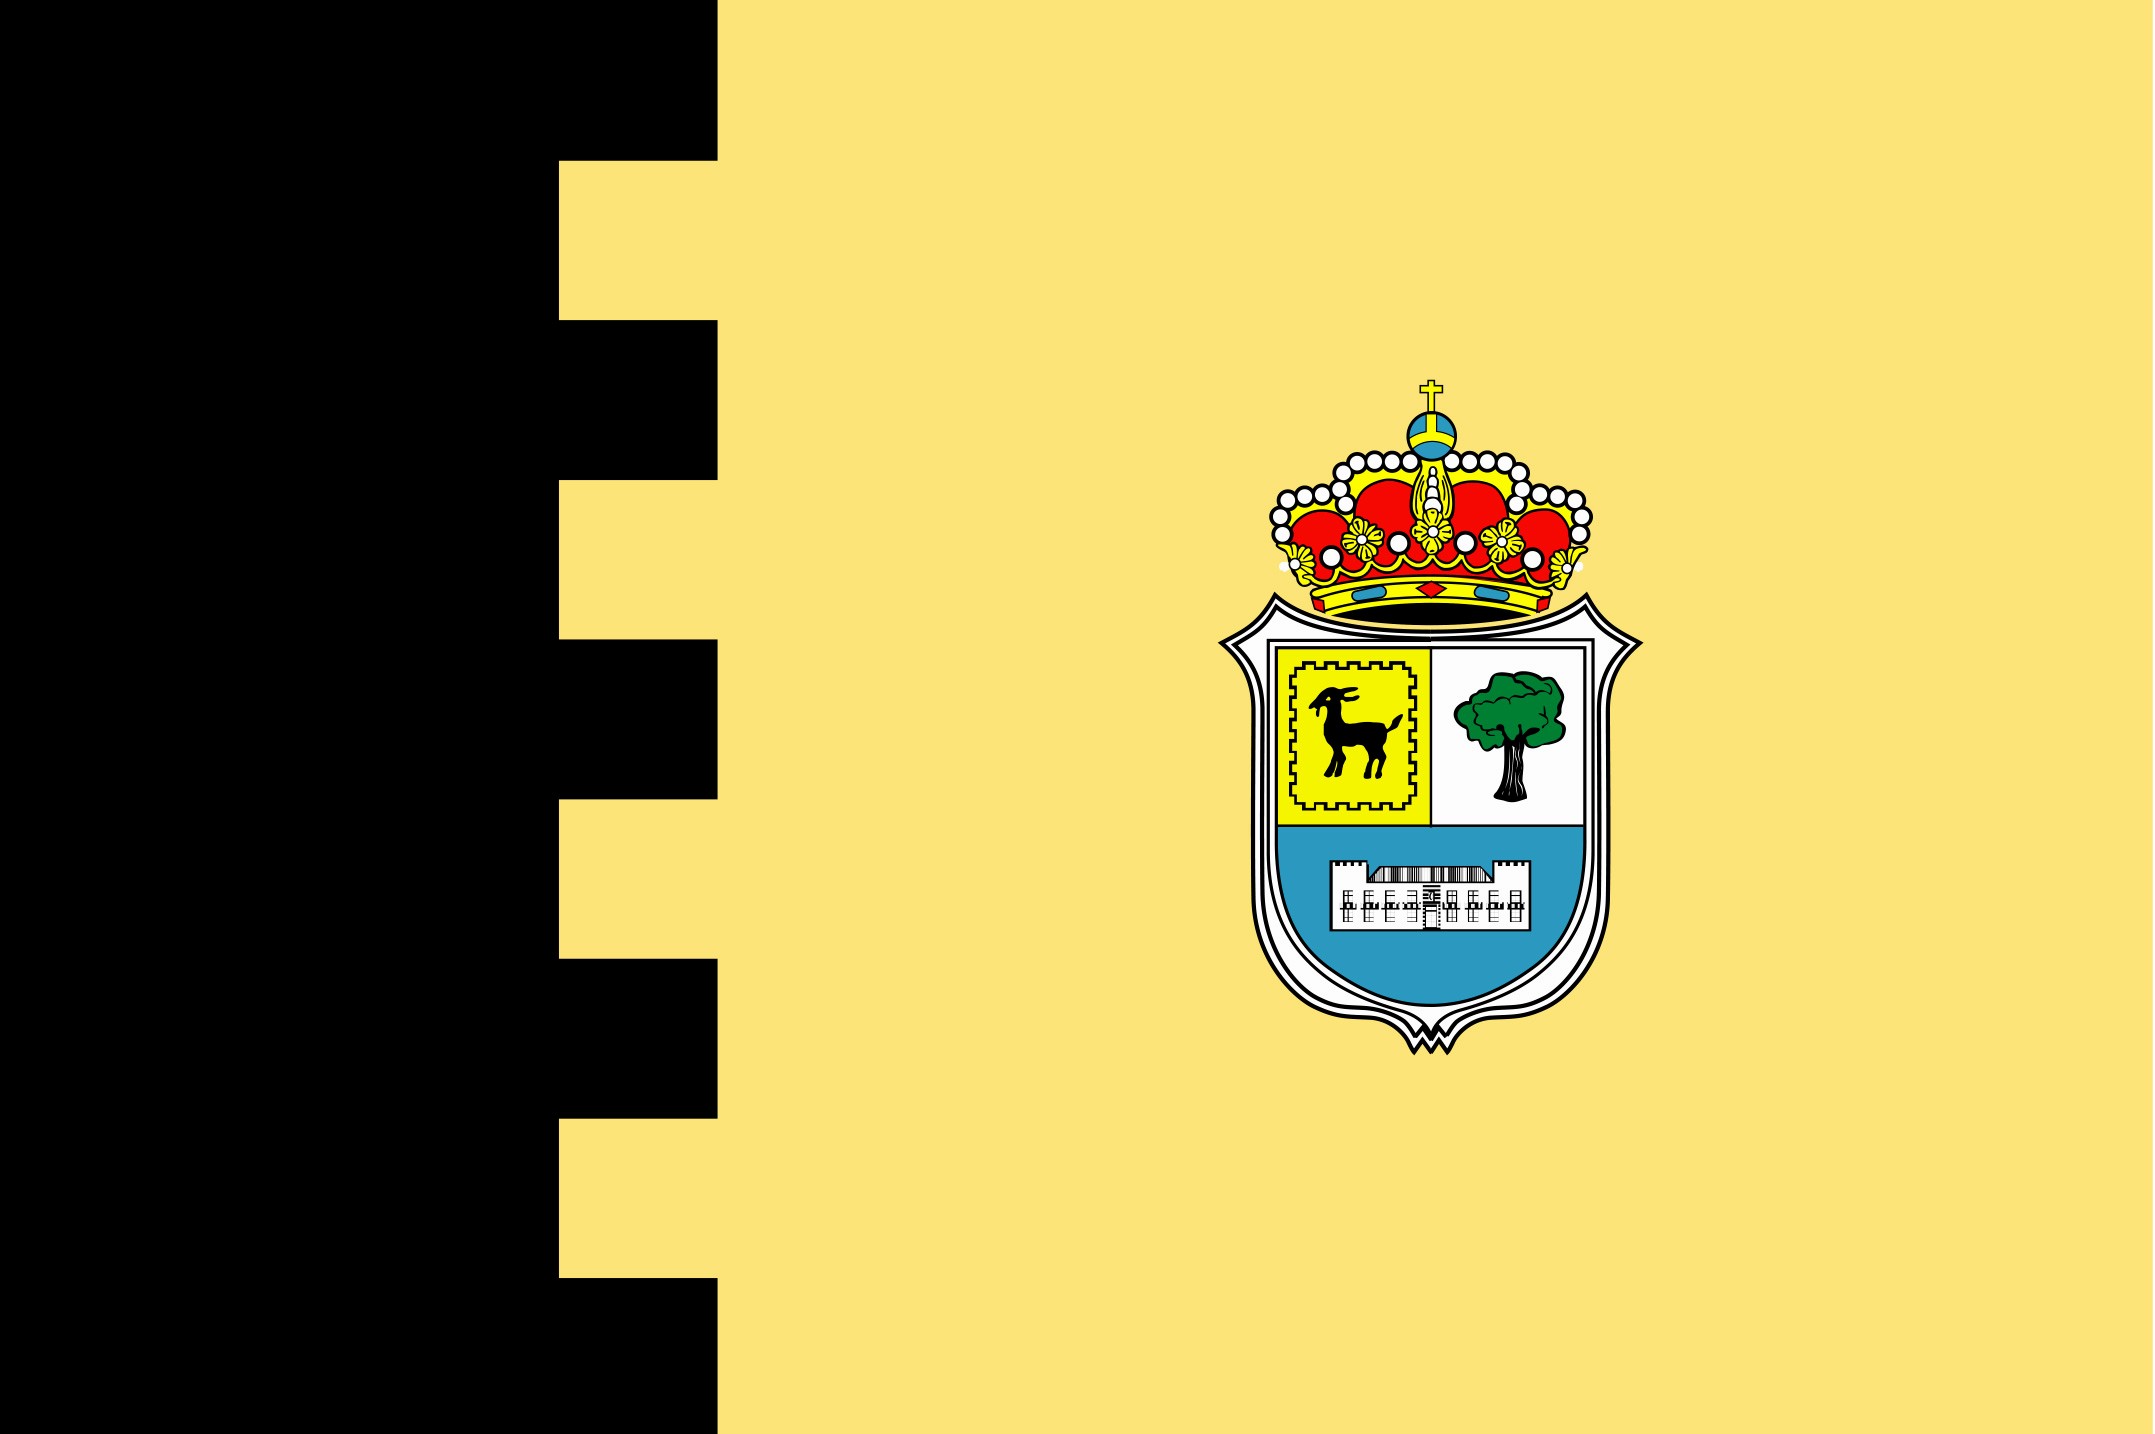 Bandera del Ayuntamiento de La Olliva en color negro y amarillo.